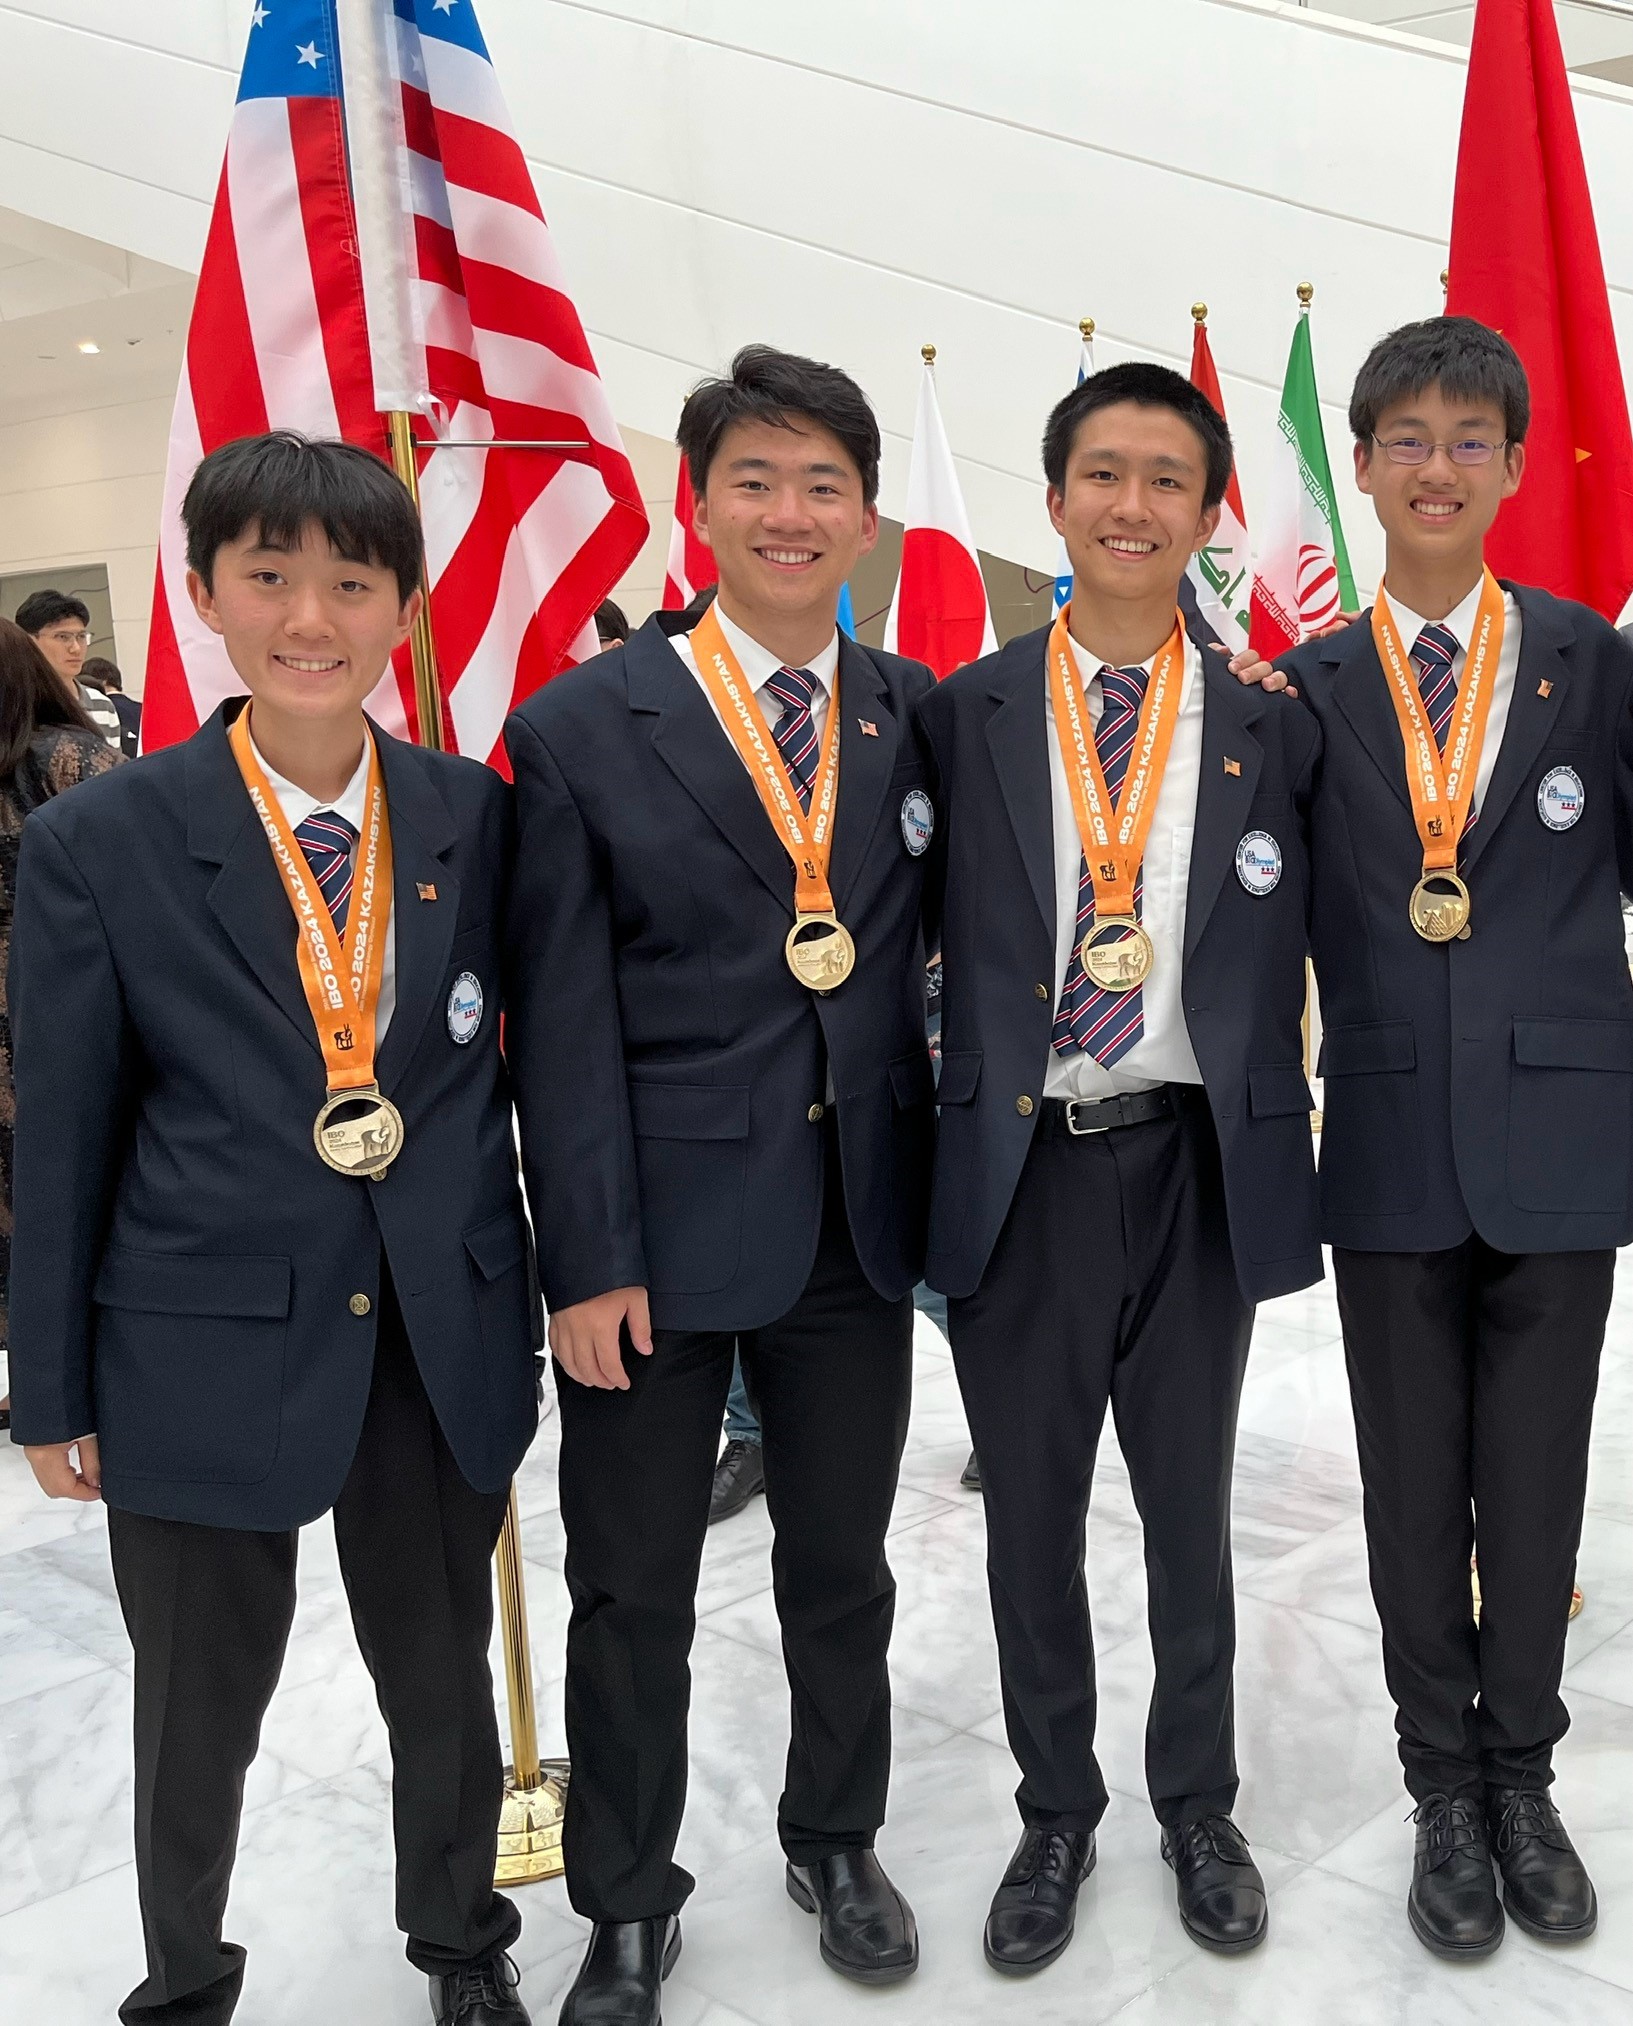 USA Biolympiad team at International Biology Olympiad.  4 gold medals